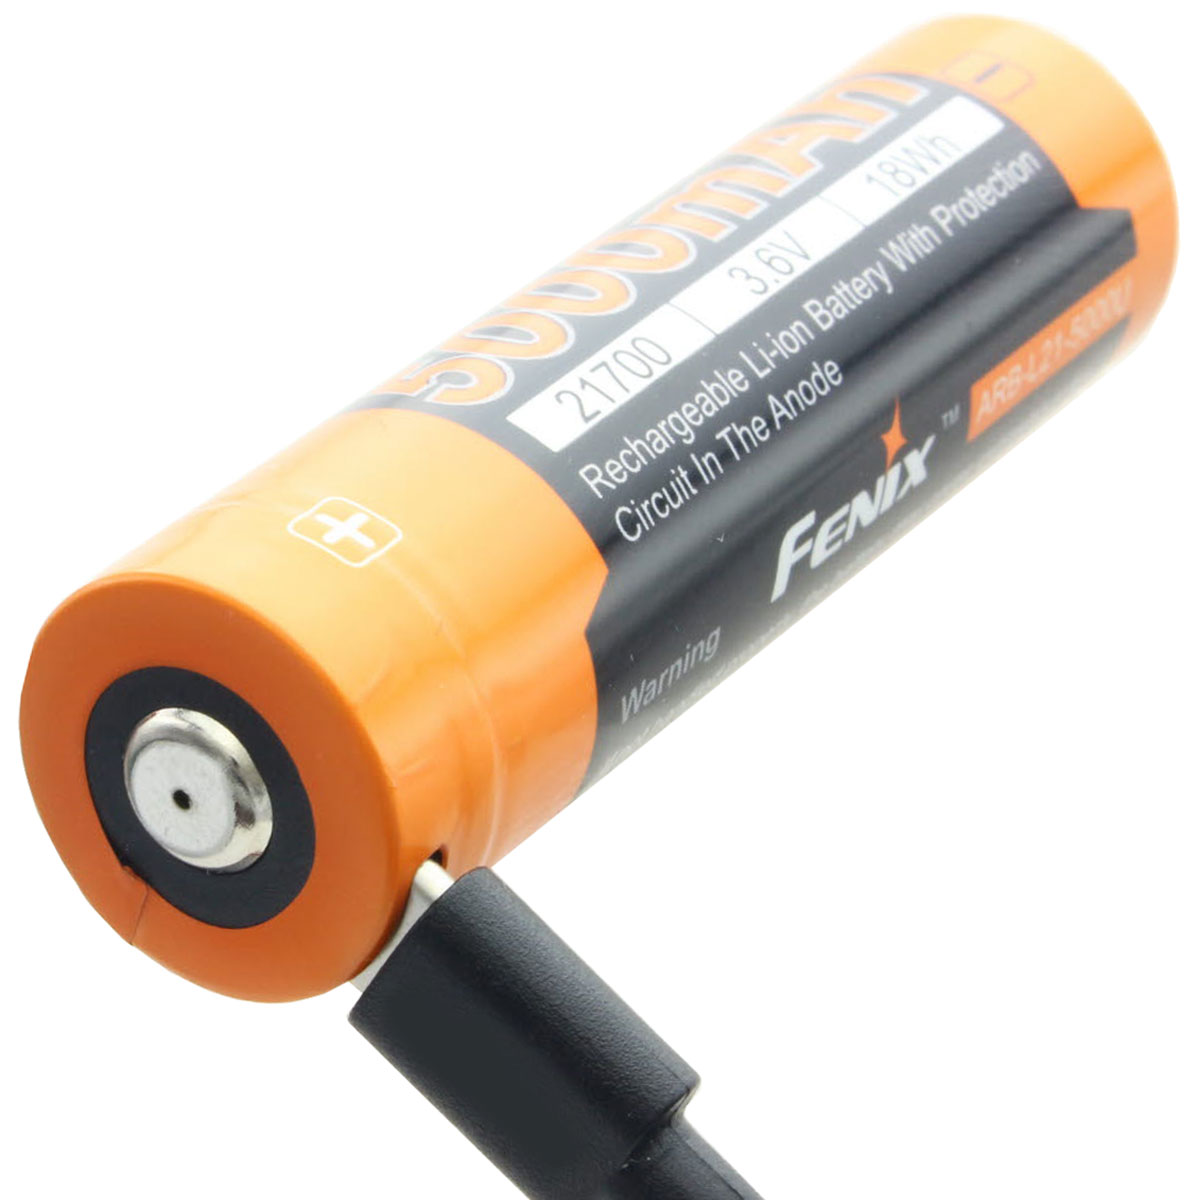 21700 USB Li-ion Akku Fenix ARE-L21-5000U 21700 Abmessungen 76x21,5mm, max. 8A